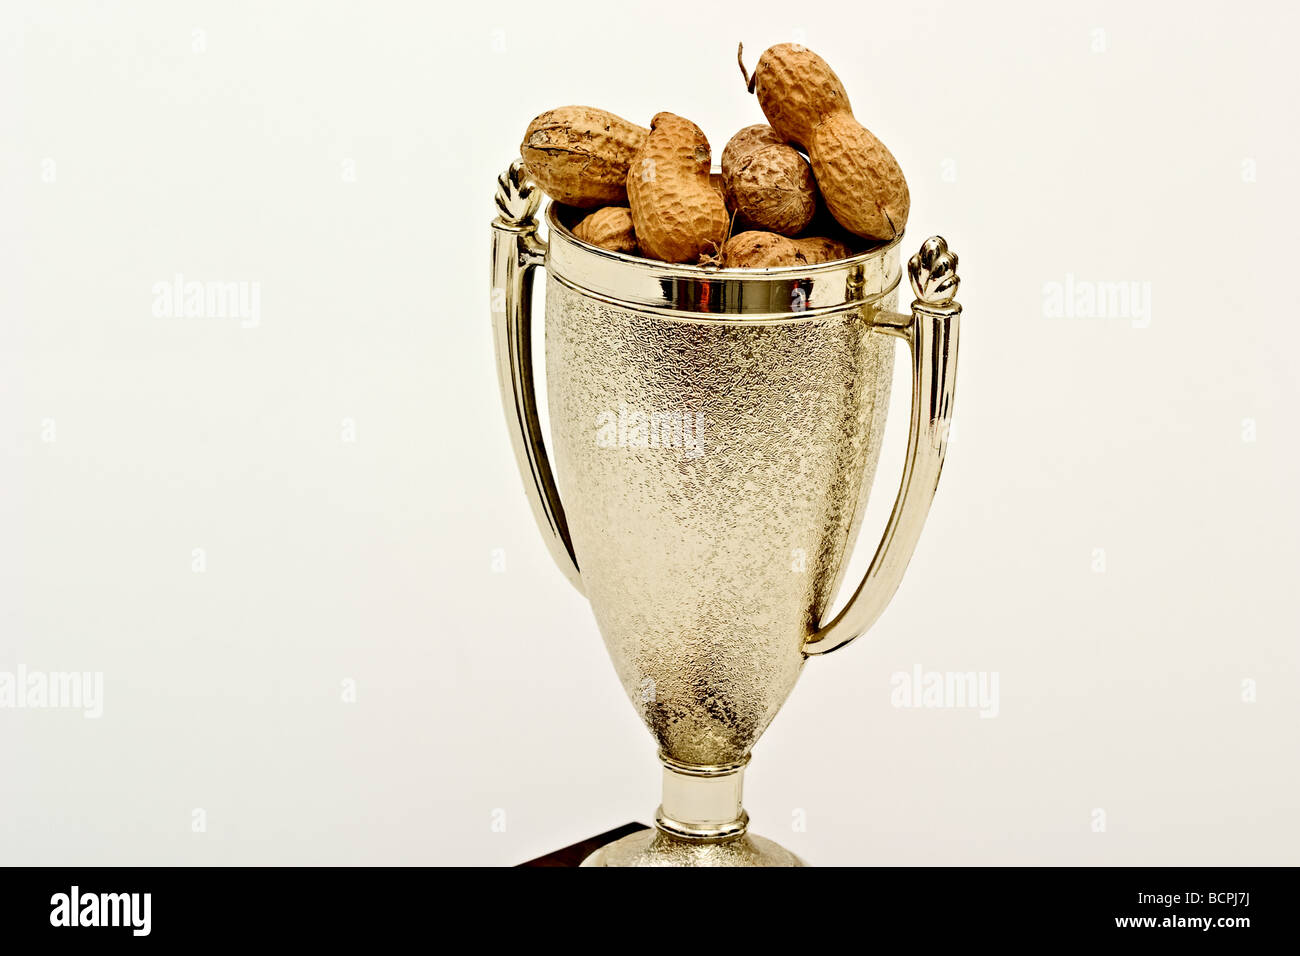 Un trophée tasse remplie d'arachides en coque Banque D'Images